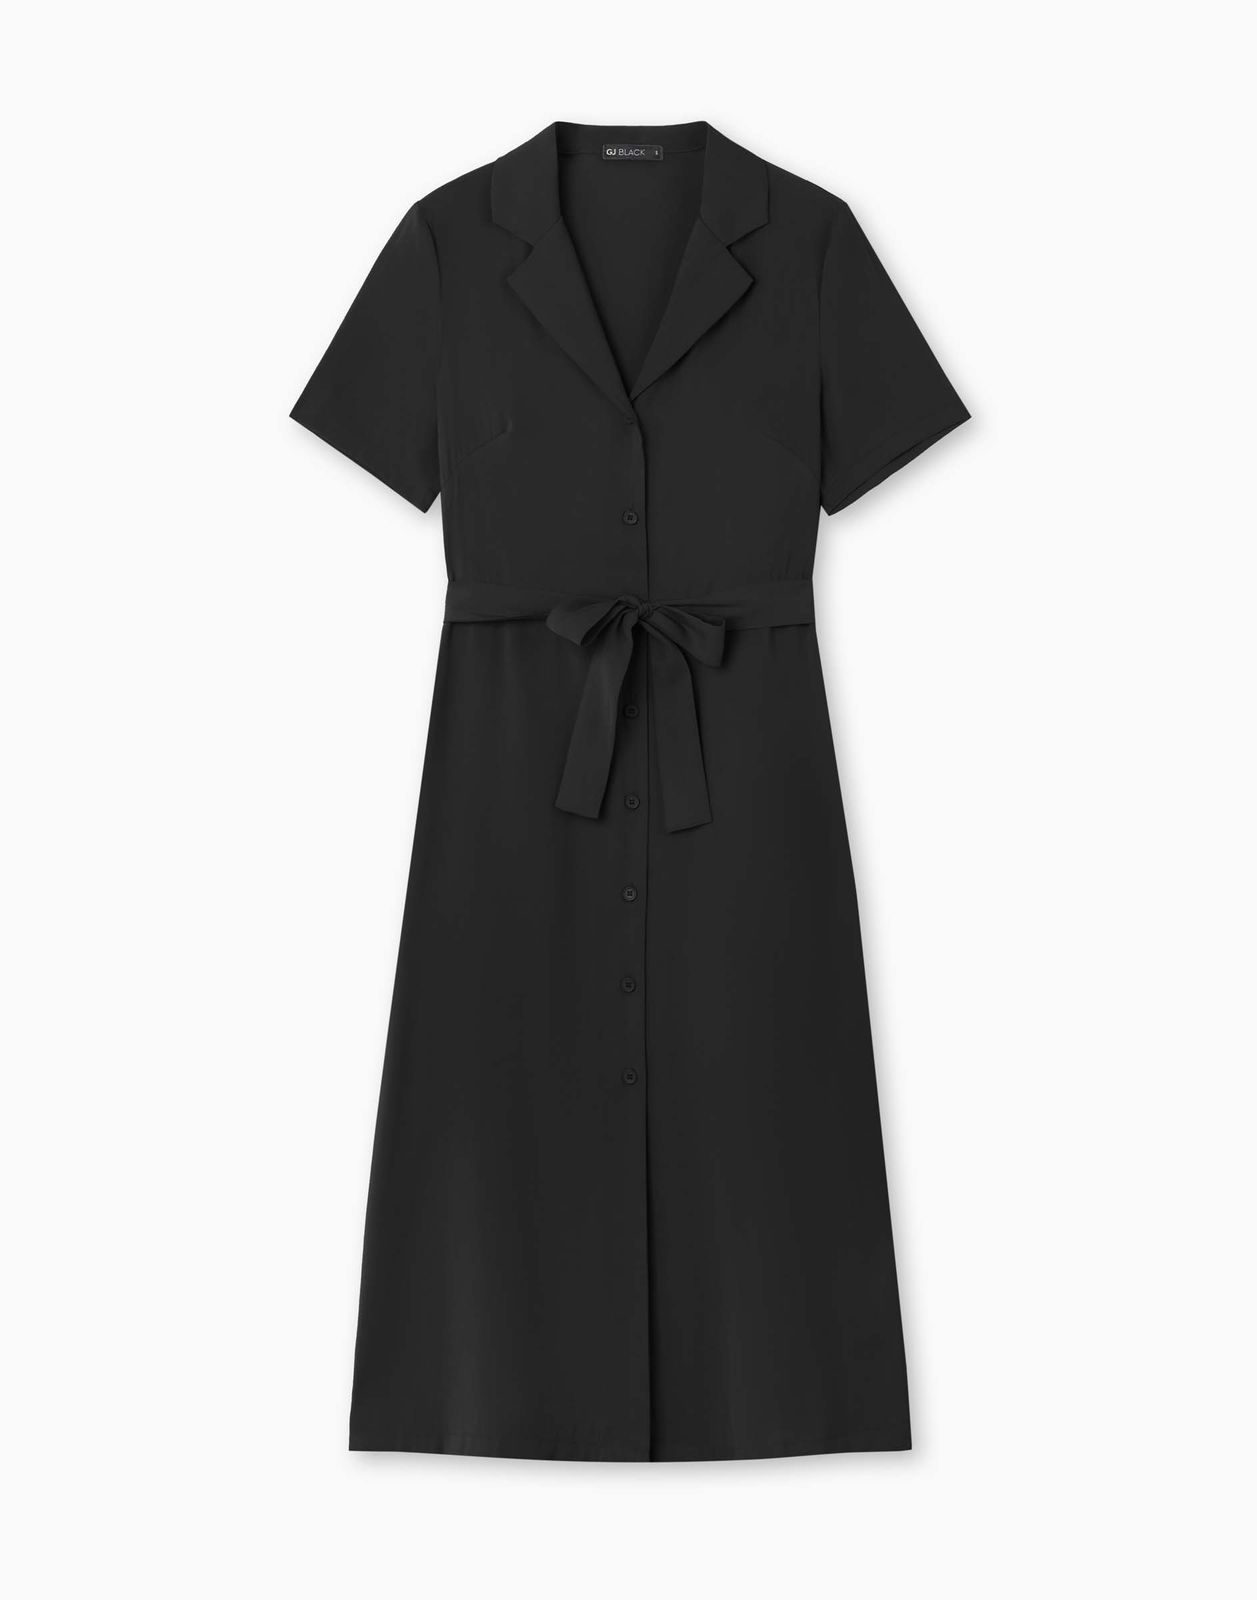 Платье женское Gloria Jeans GDR028322 черный M/170